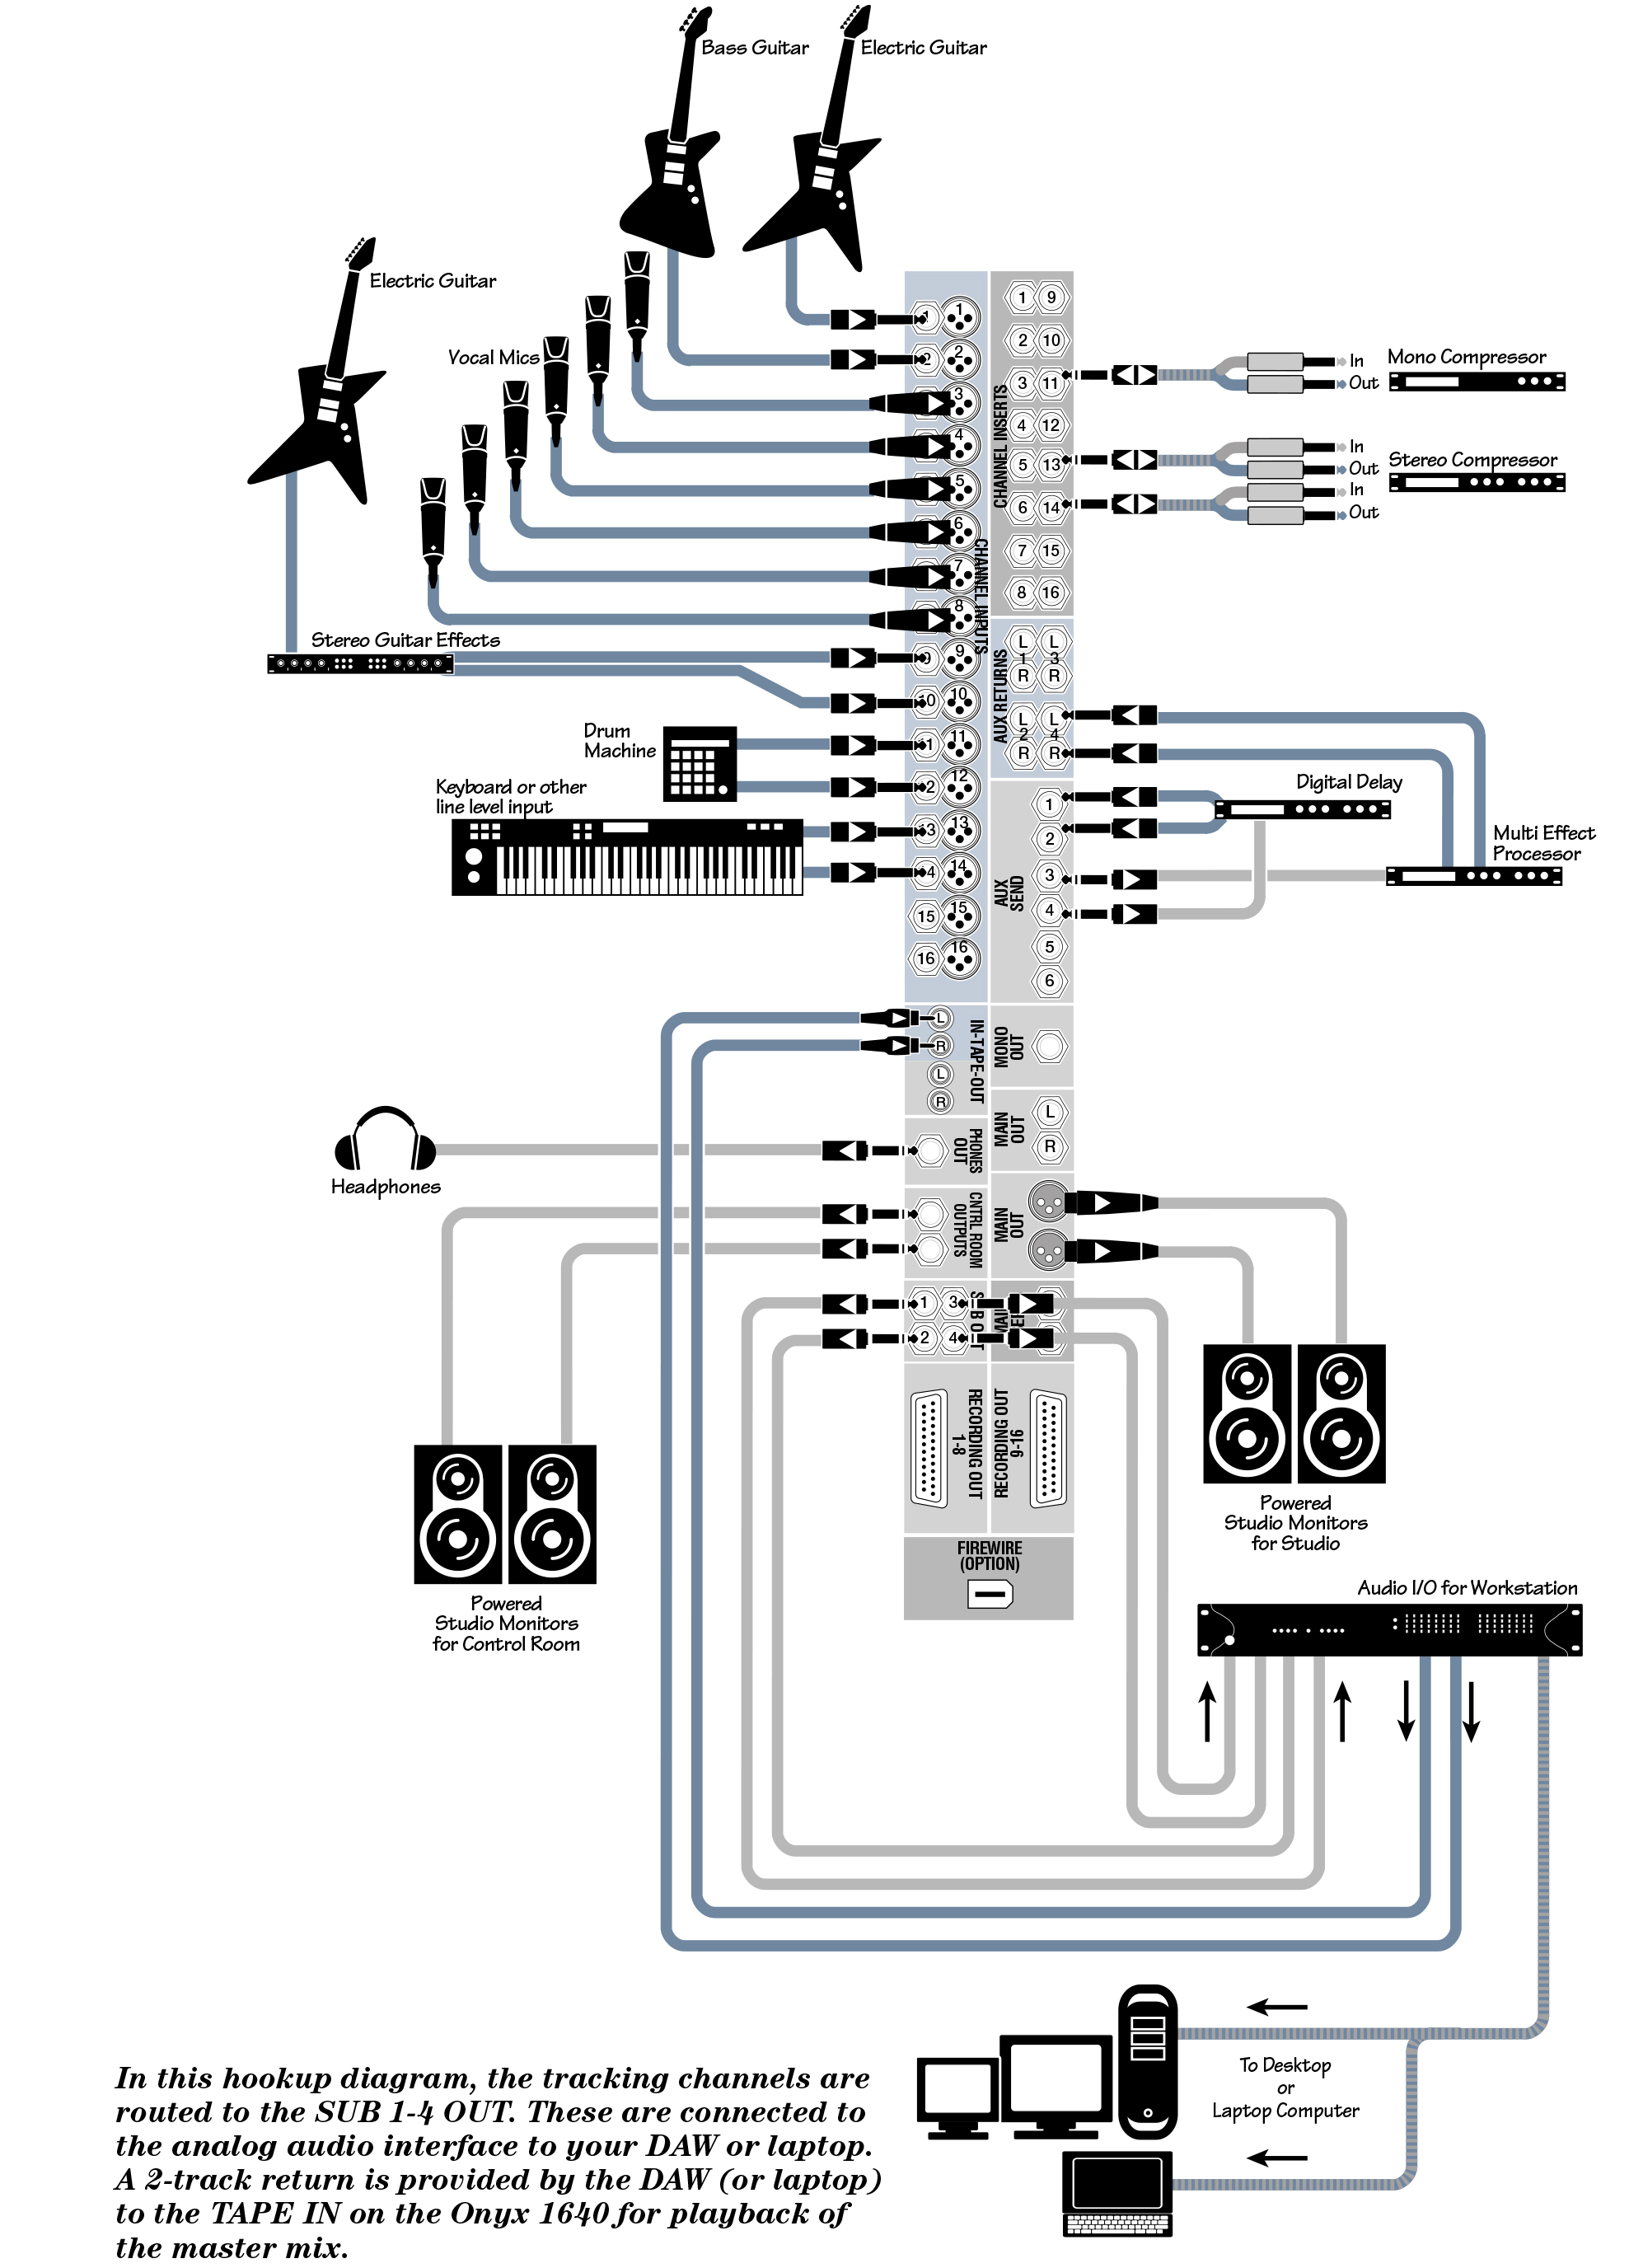 Схема подключения к микшерному пульту Mackie ONYX 1640i